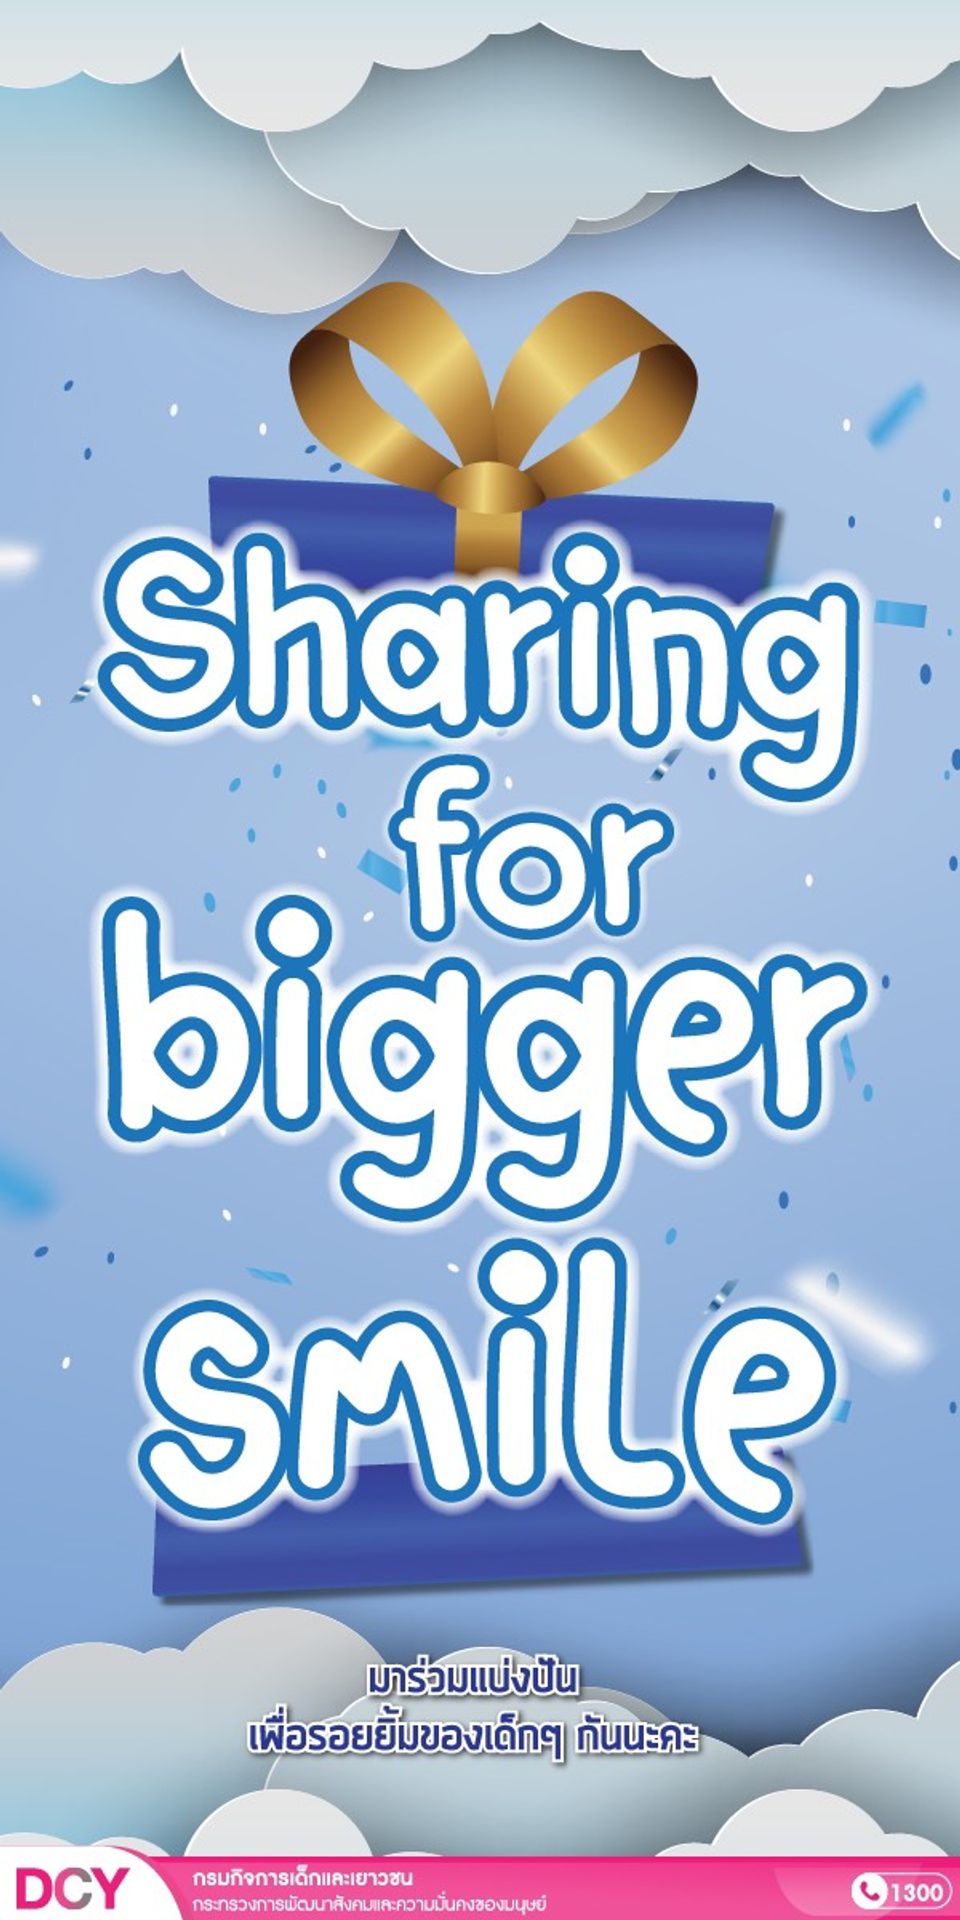 Sharing for bigger smile ร่วมบริจาคของขวัญจากบุคคลทั่วไป เพื่อรอยยิ้มของเด็กๆ